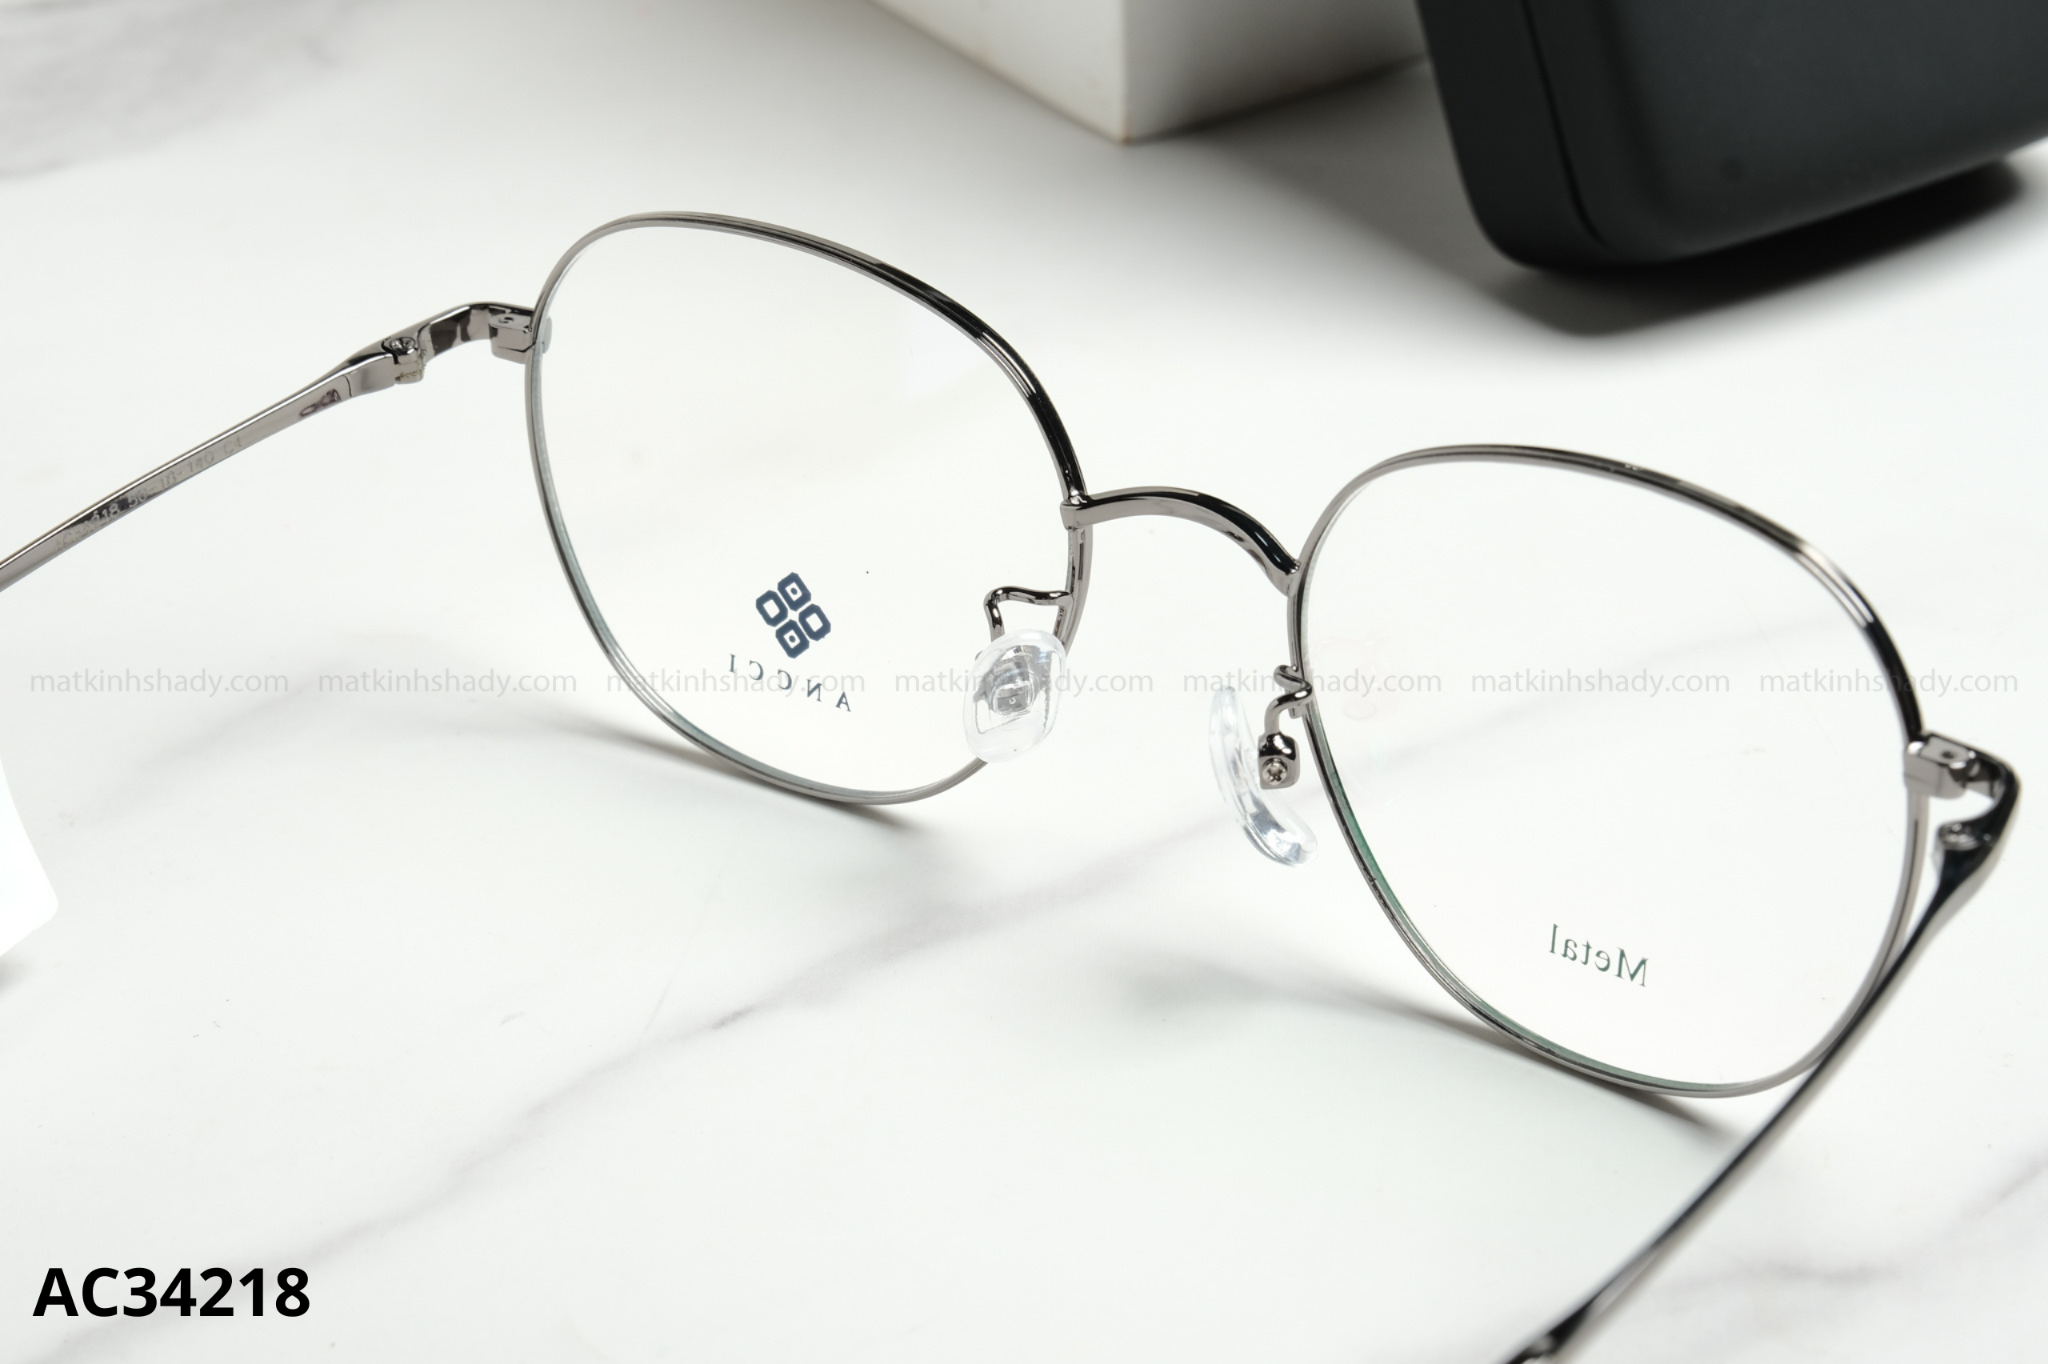  ANCCI Eyewear - Glasses - AC34218 